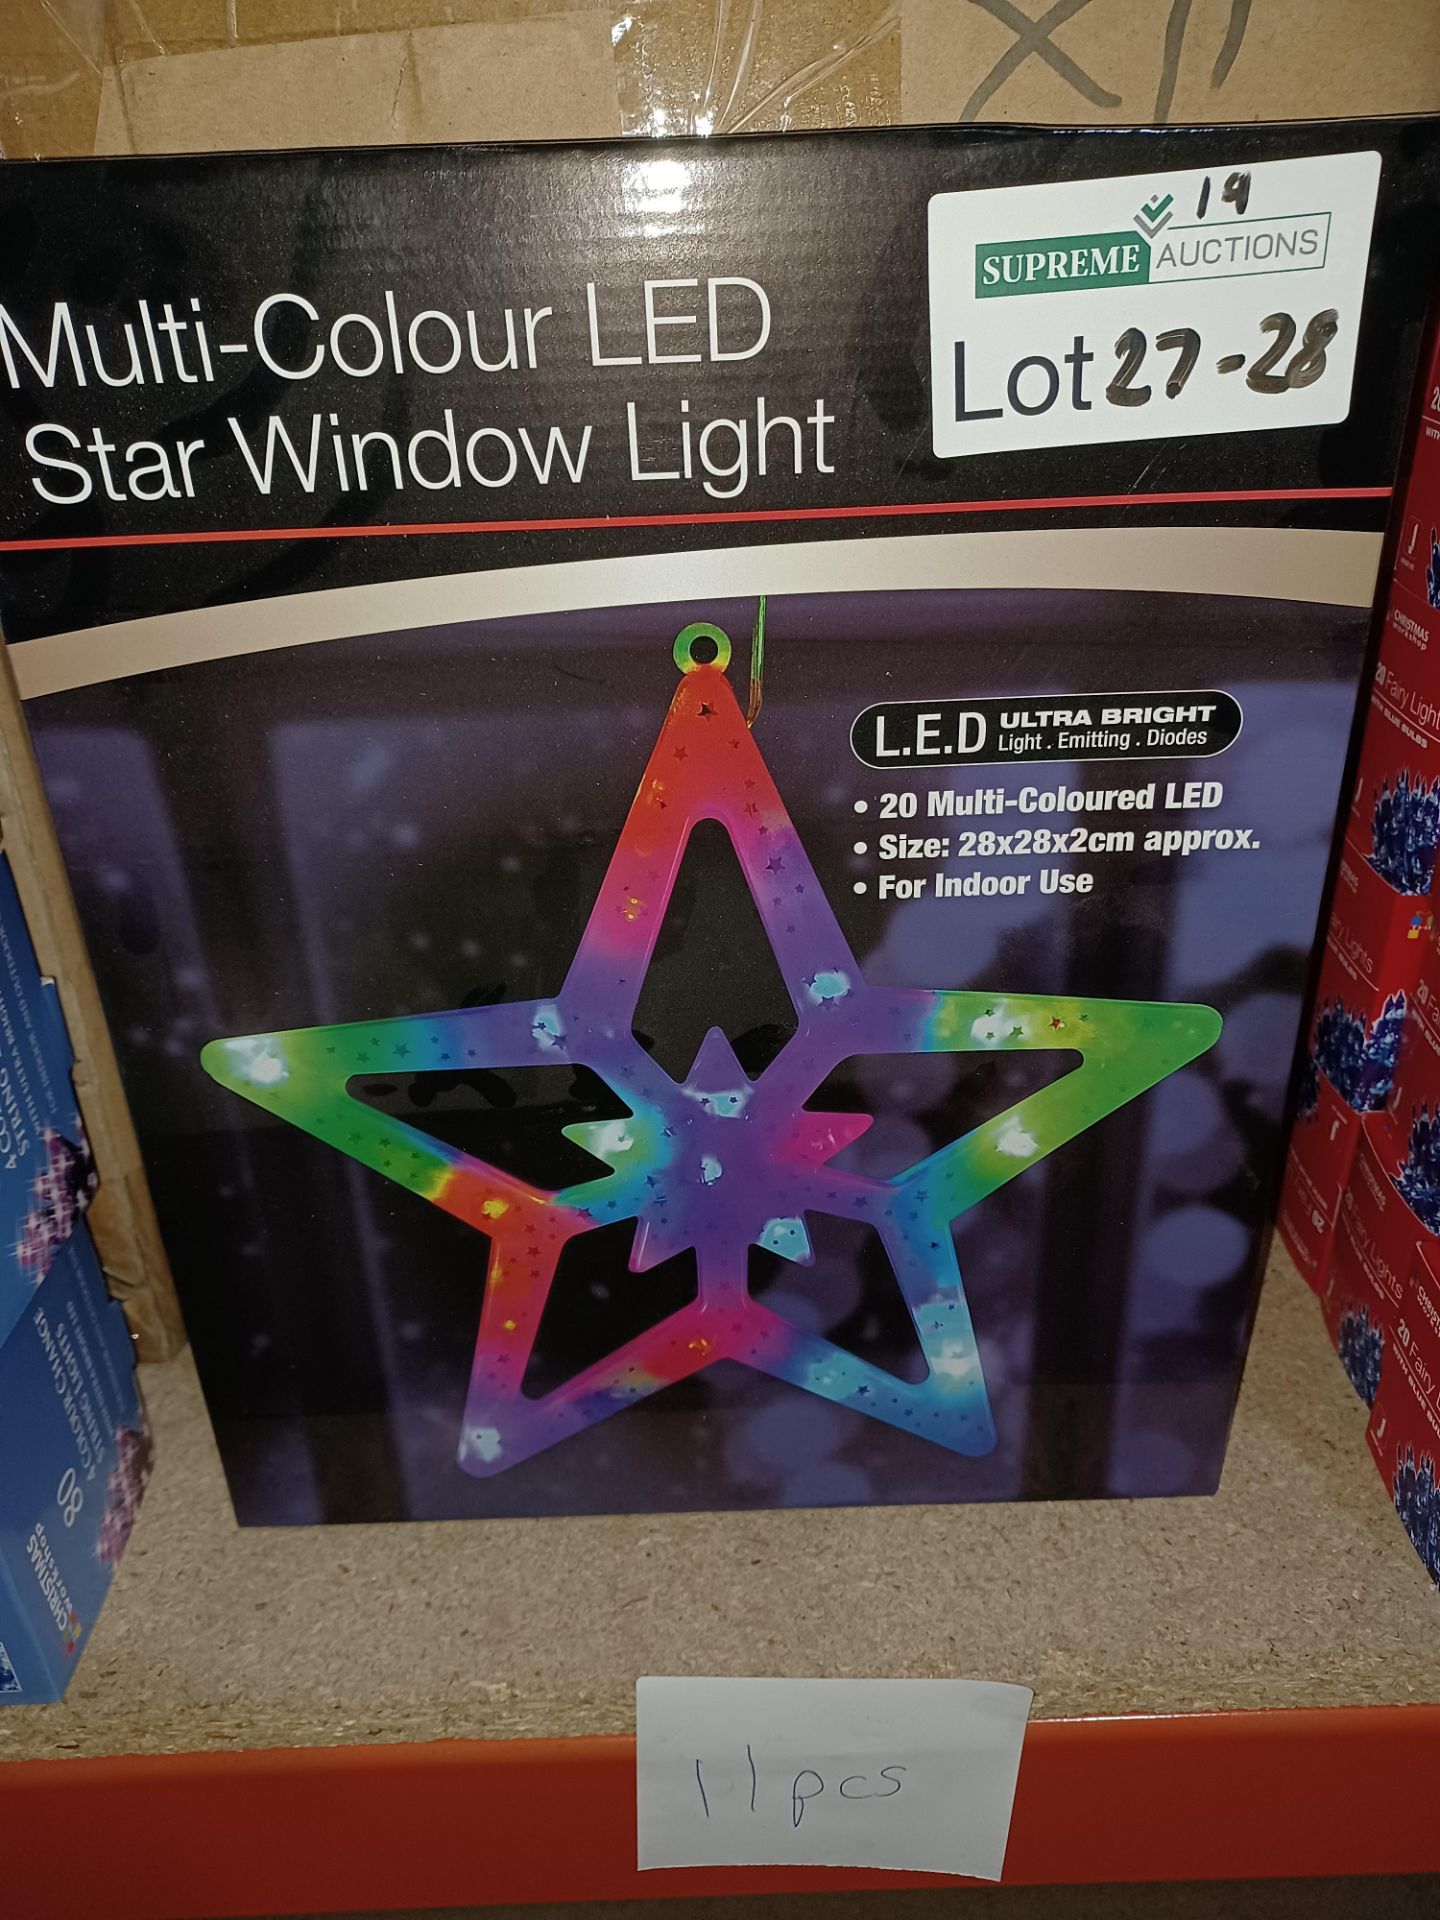 NEW BOXED 6 X MULTI COLOUR LED STAR WINDOW LIGHT (28x28x2cm) 20 LED LIGHTS - PCK